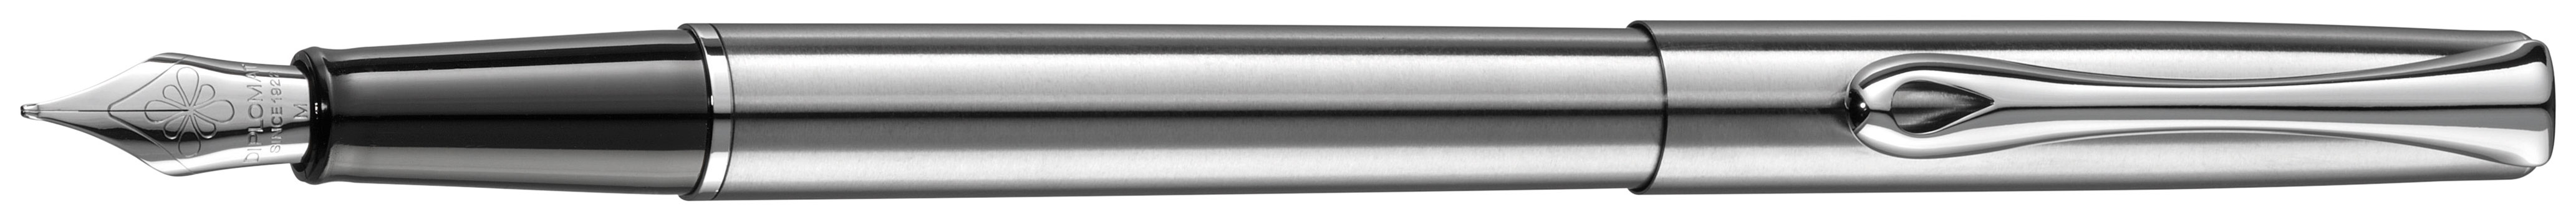 Перьевая ручка Diplomat Traveller stainless Steel F синяя арт. D10057495